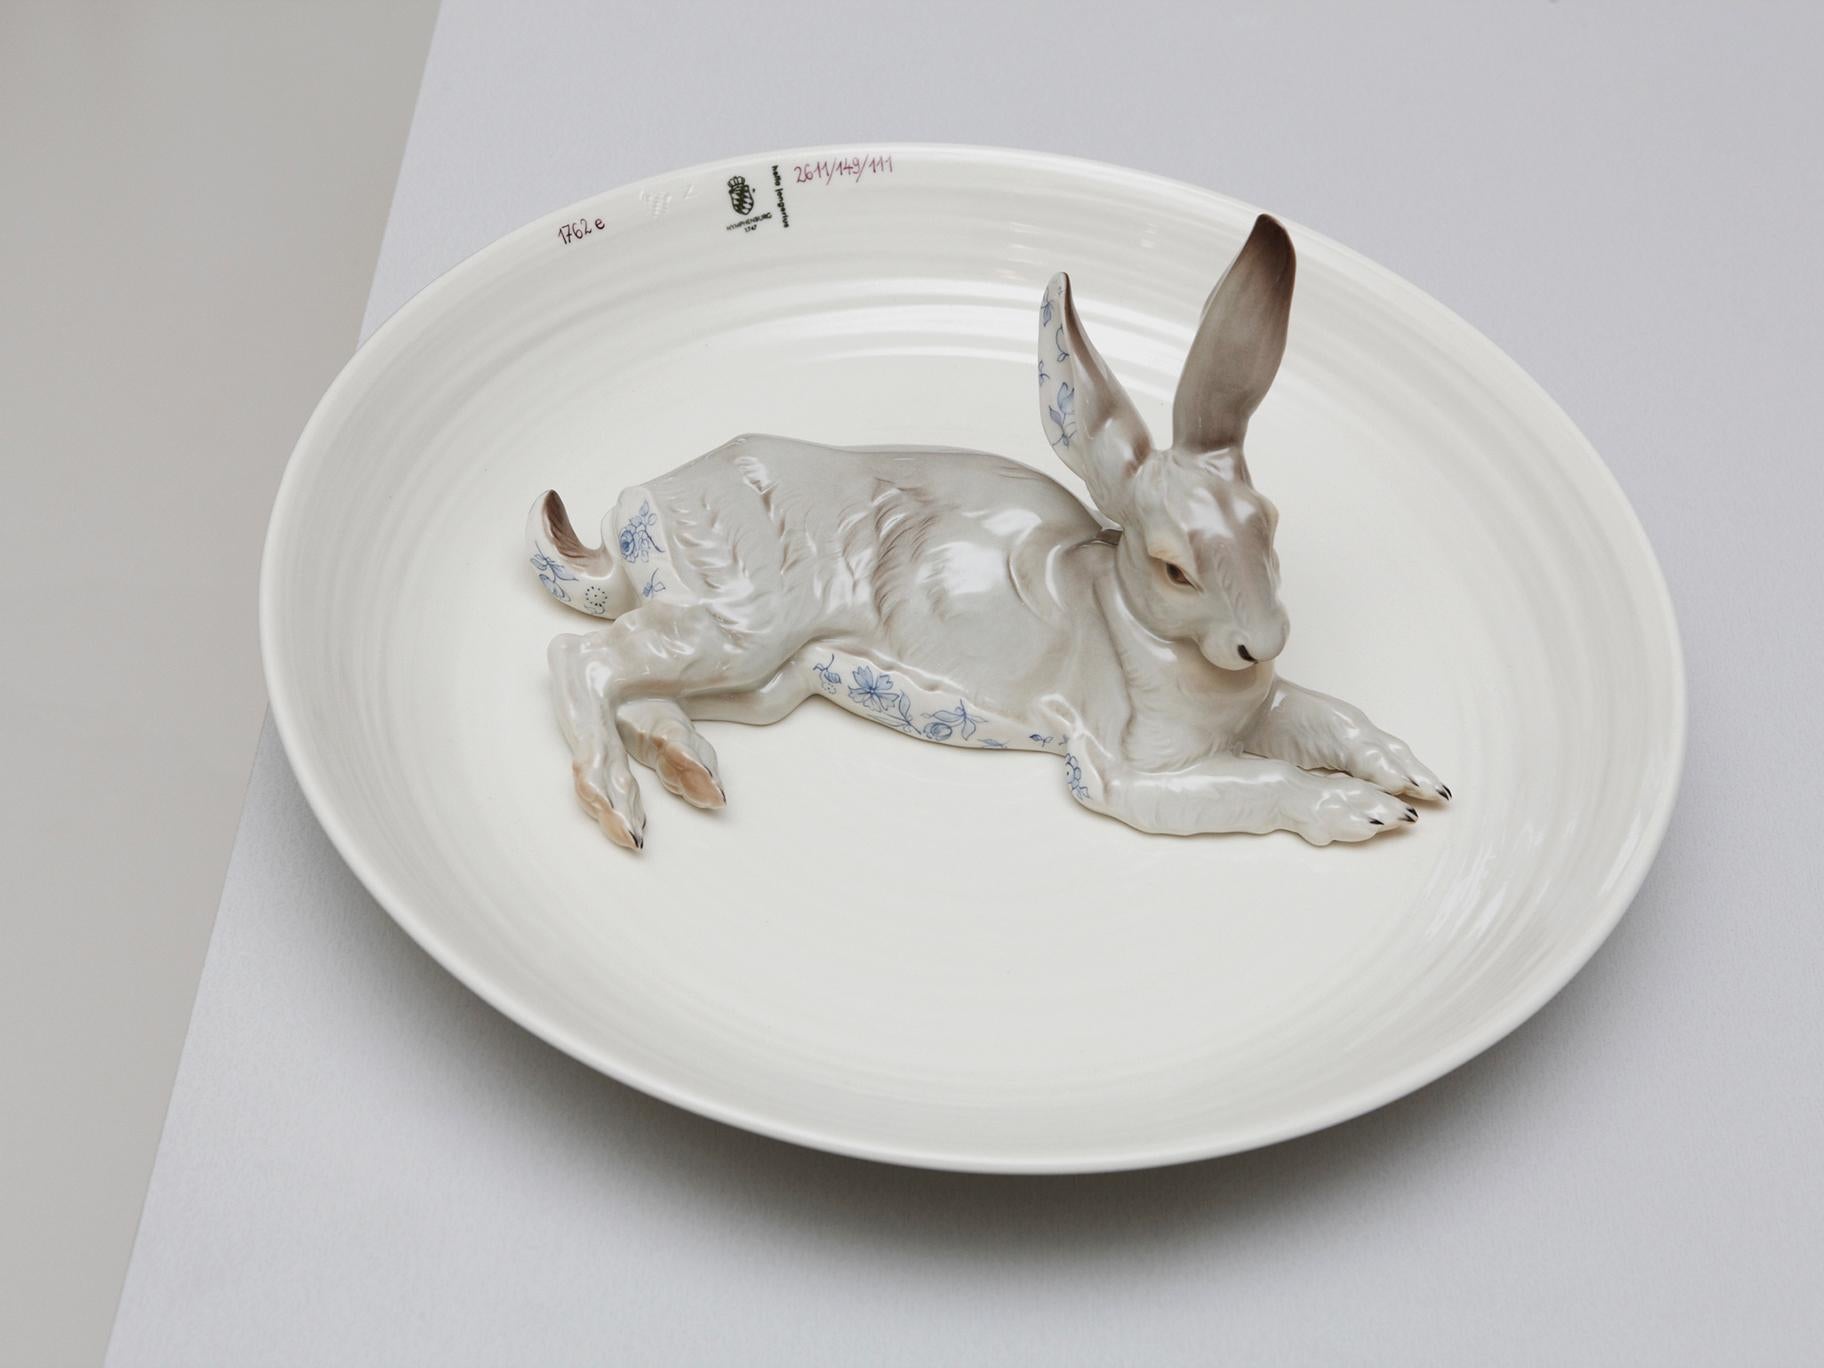 Diese Schale gehört zu einer Serie von Tierschalen, die Hella Jongerius für die Nymphenburger Porzellanmanufaktur entworfen hat. Die große Schale mit einem Kaninchen, das mit einem blauen Blumenmuster verziert ist, ist das perfekte Objekt der